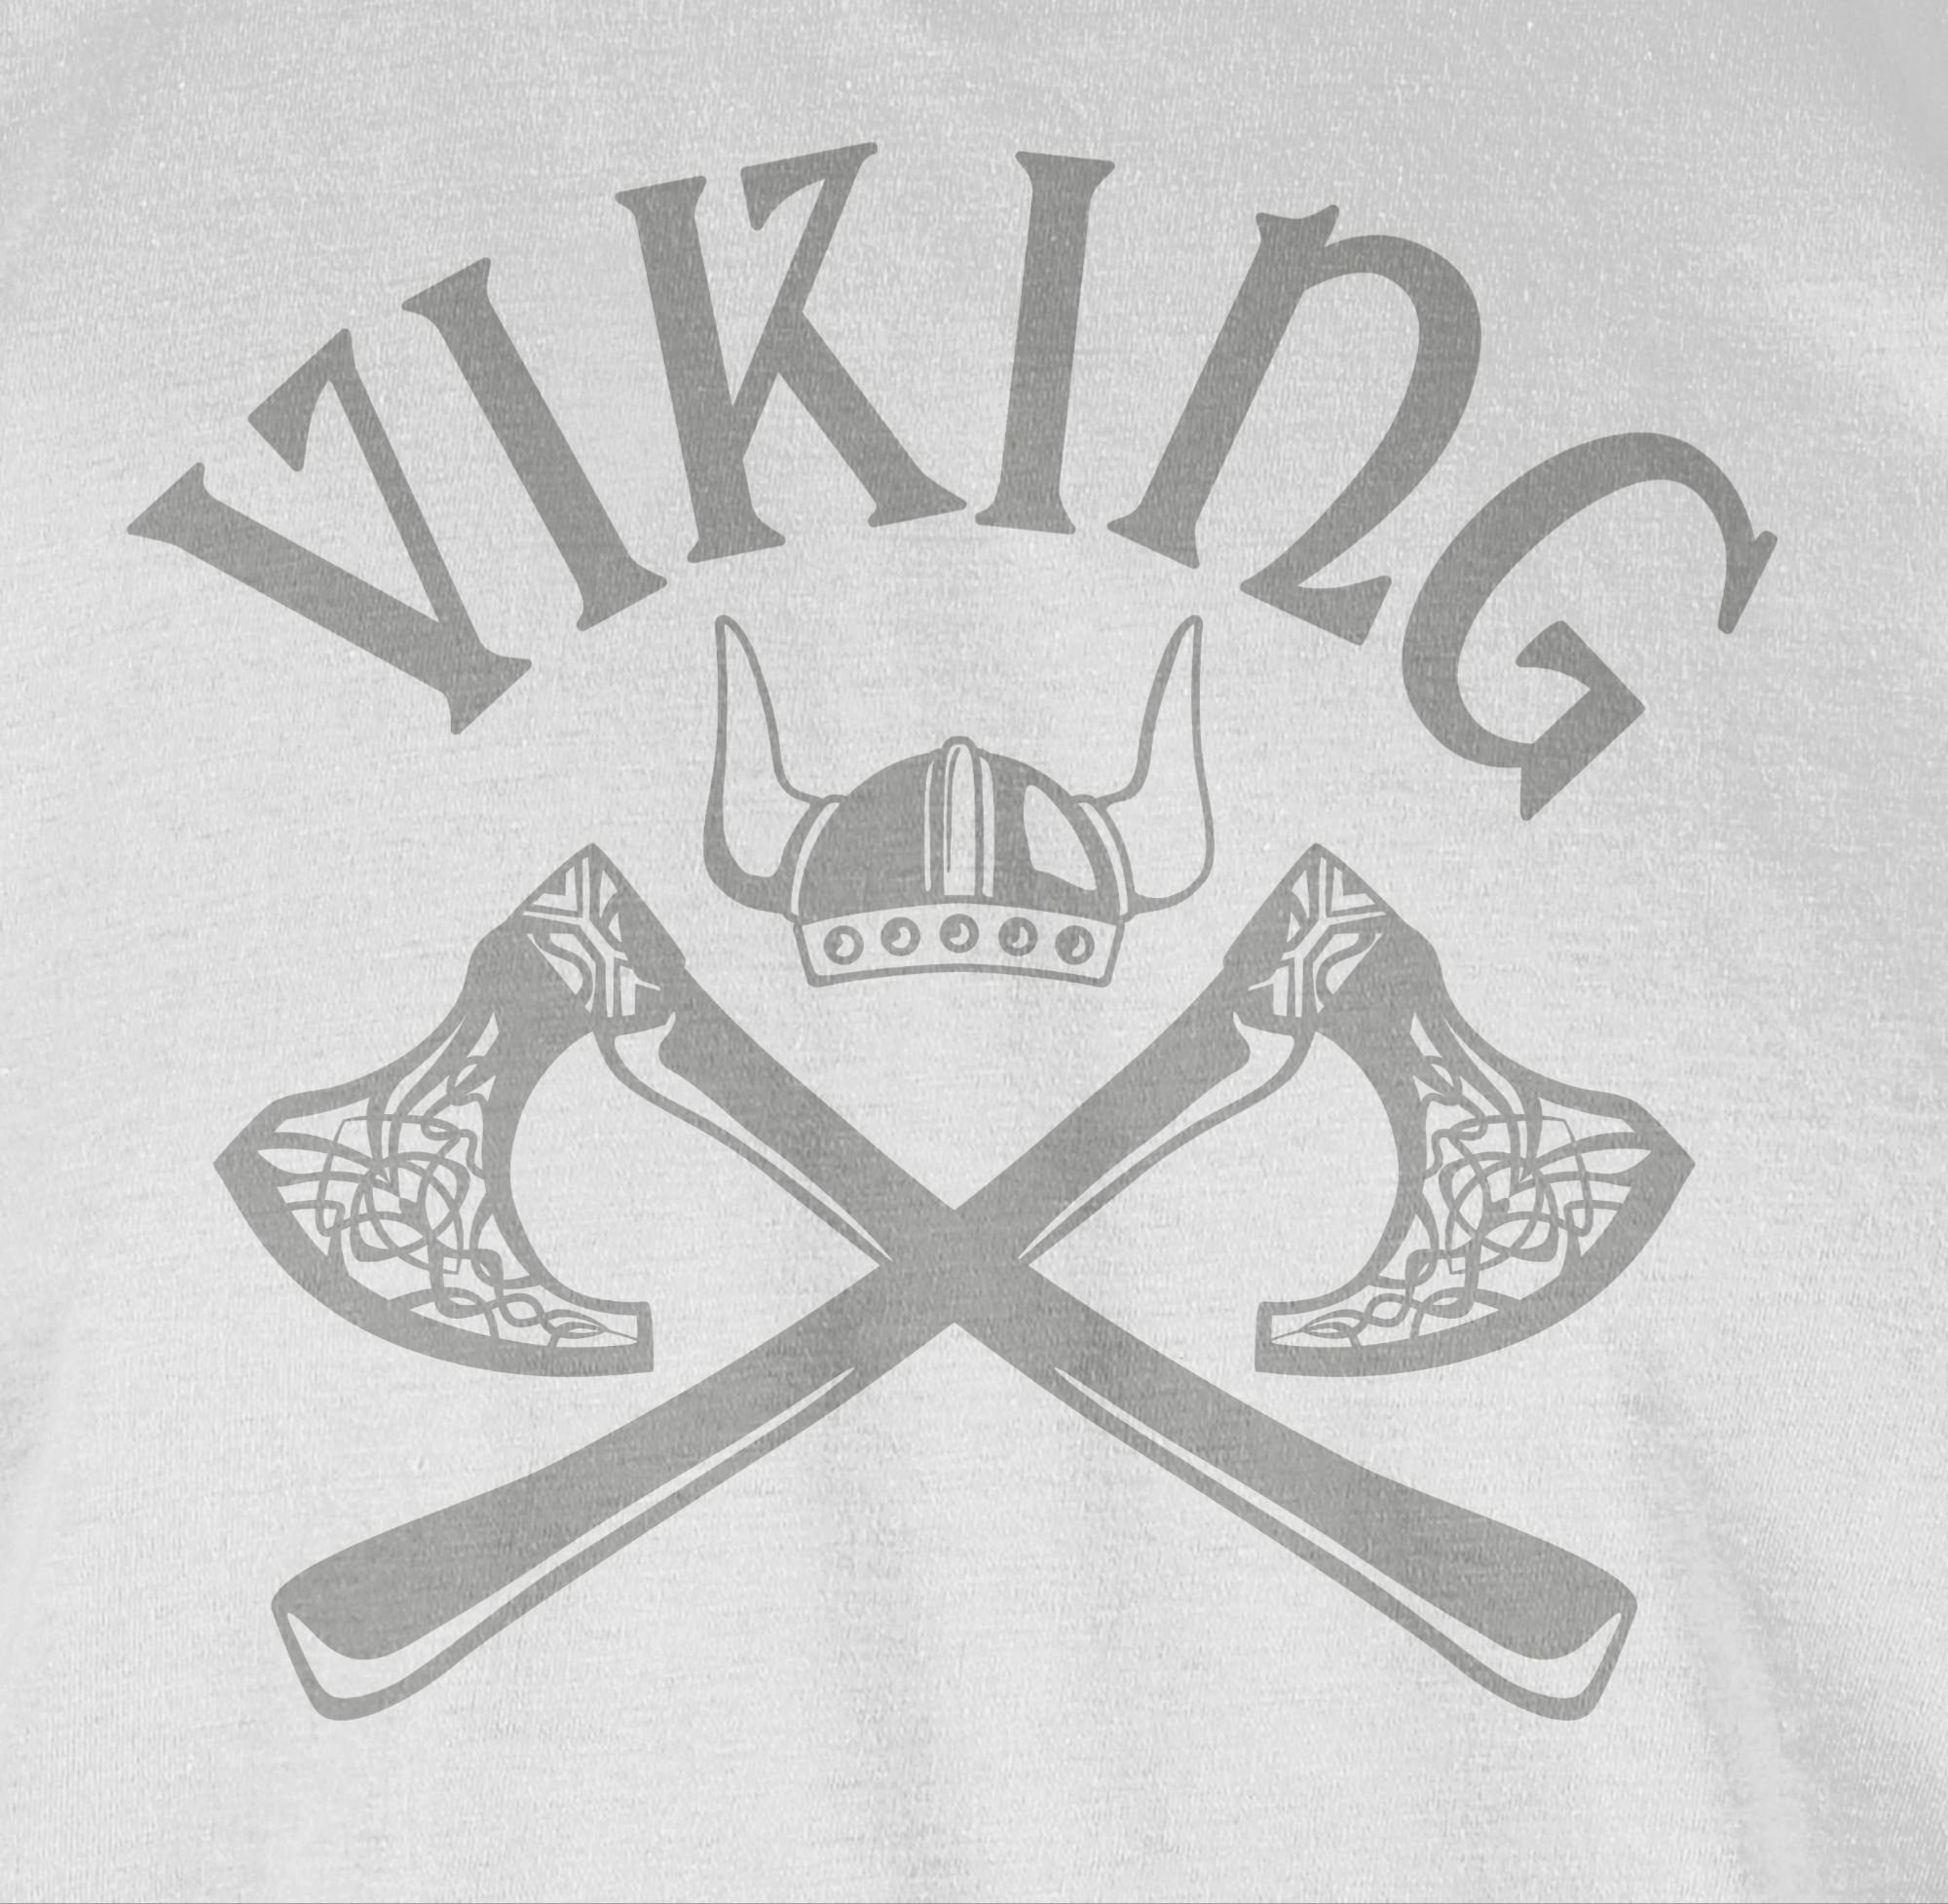 T-Shirt Streitaxt Wikinger & Odin Wikinger Walhall Weiß Walhalla Herren 03 Nordmänner Shirtracer Viking